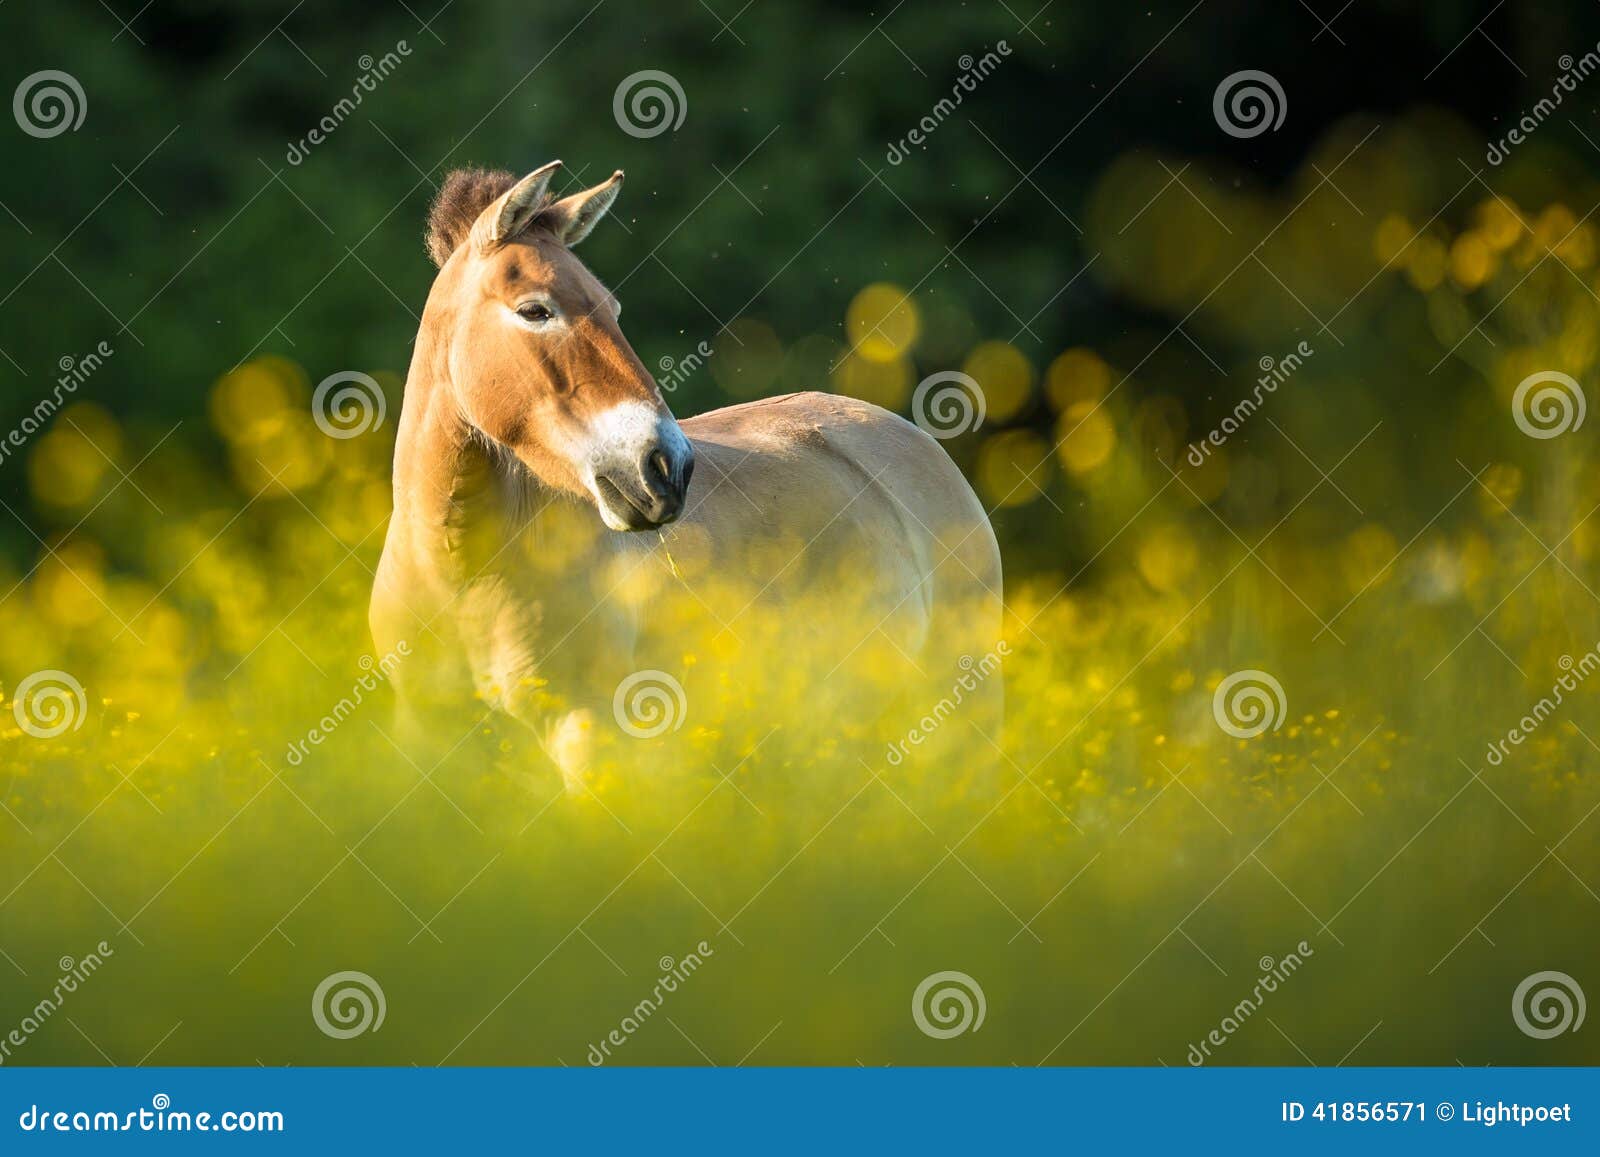 阿拉伯母马和马驹在一个绿色领域与树和白板篱芭在背景中 库存图片. 图片 包括有 绿色, 哺乳动物, 马驹 - 122321897